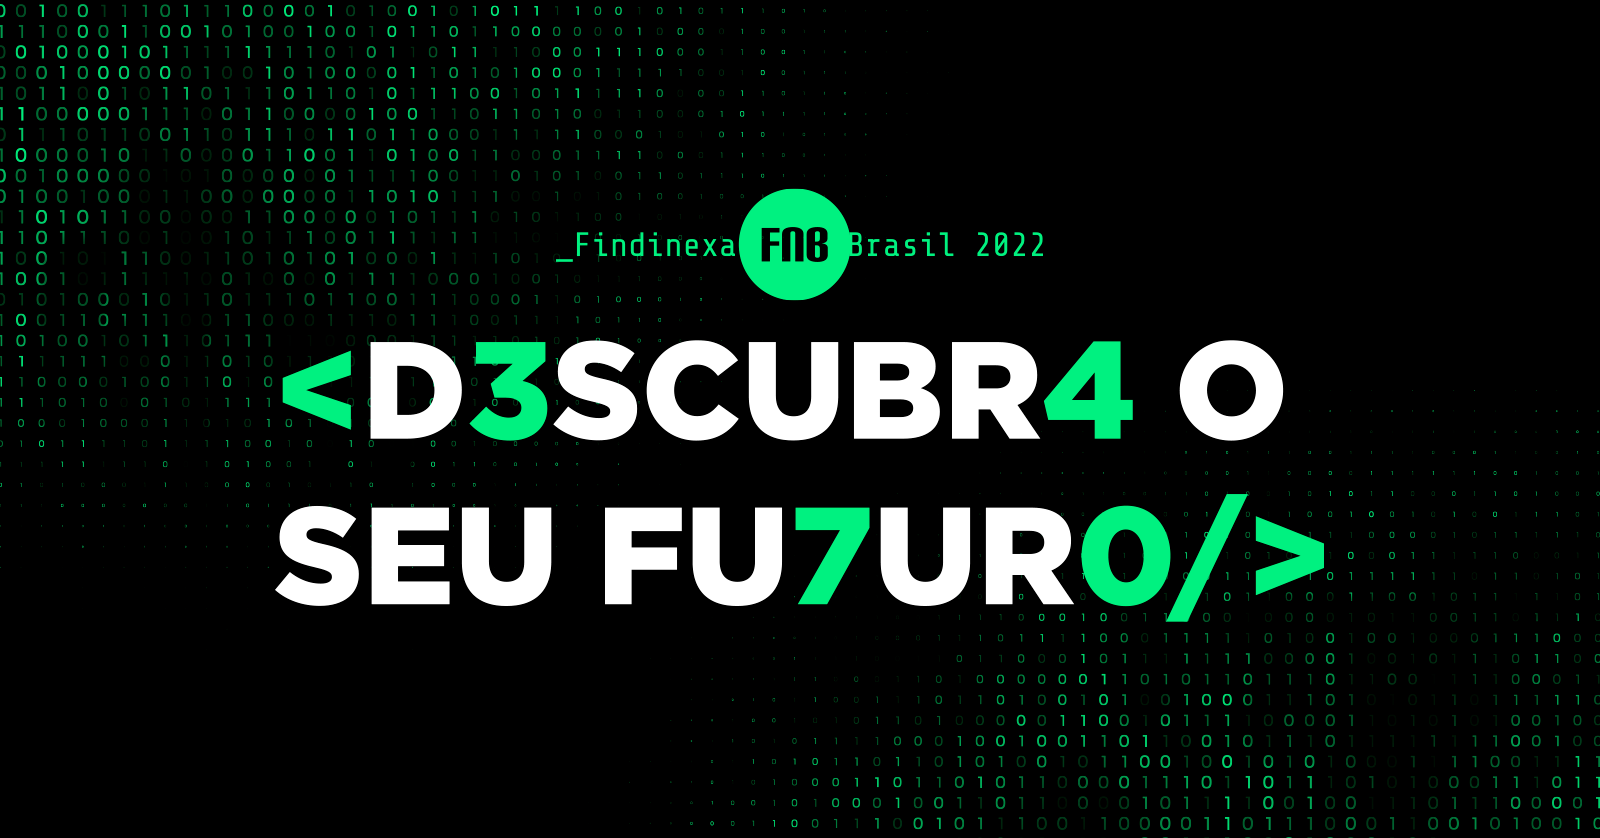 FINDINEXA BRASIL 2022